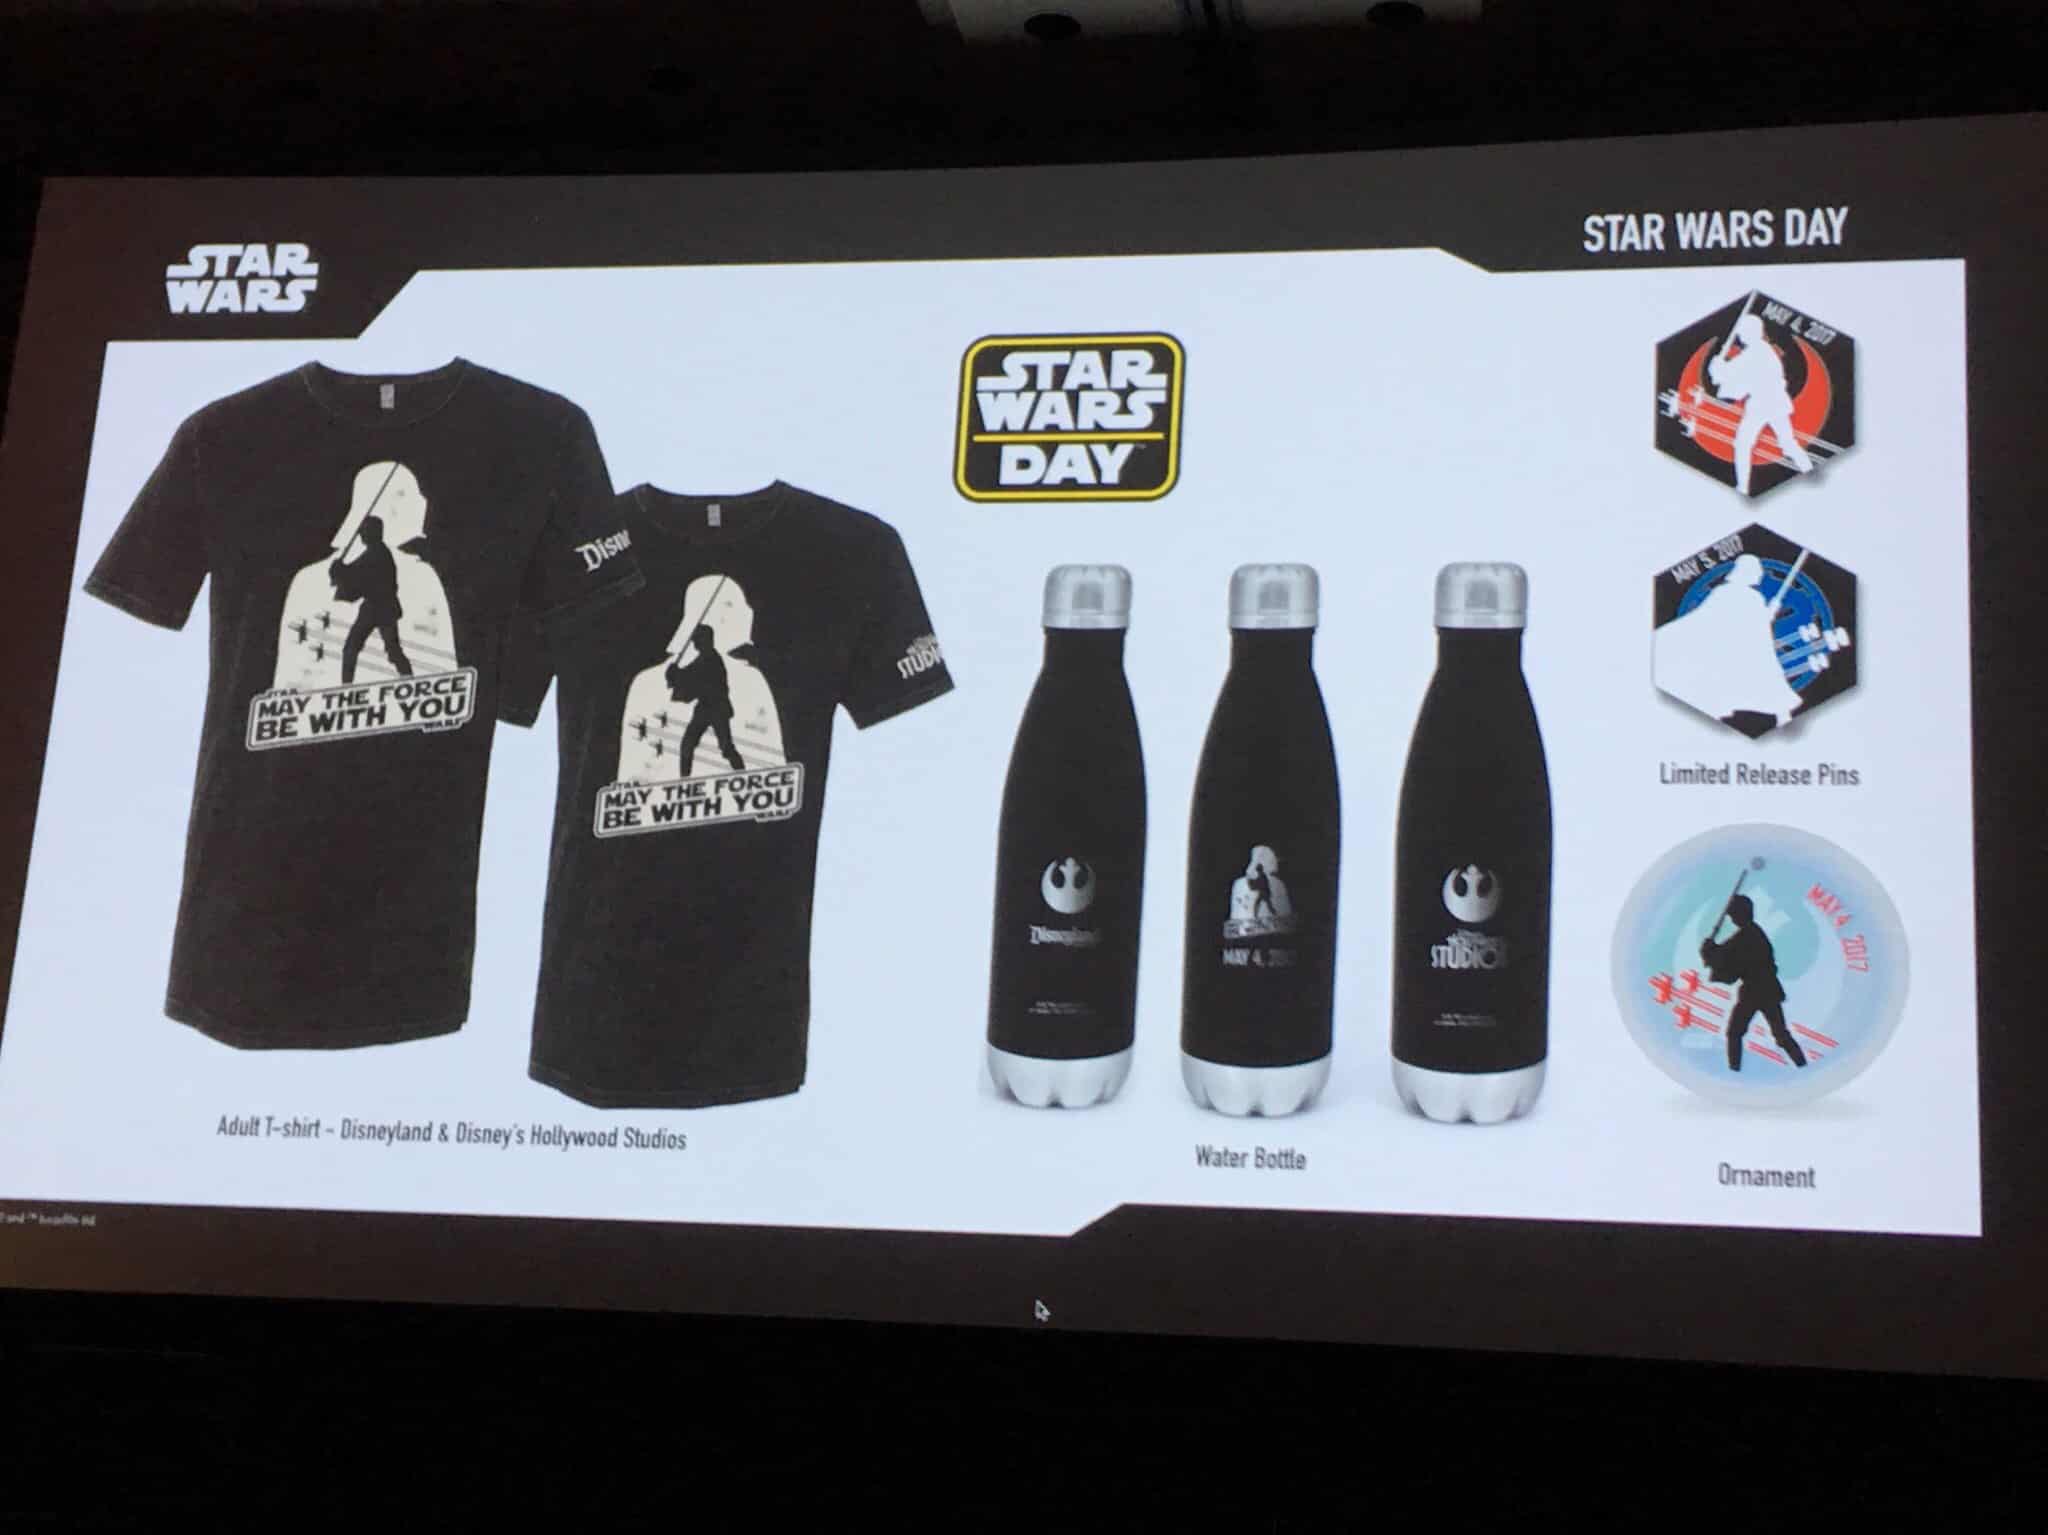 star wars celebration exclusive merchandise